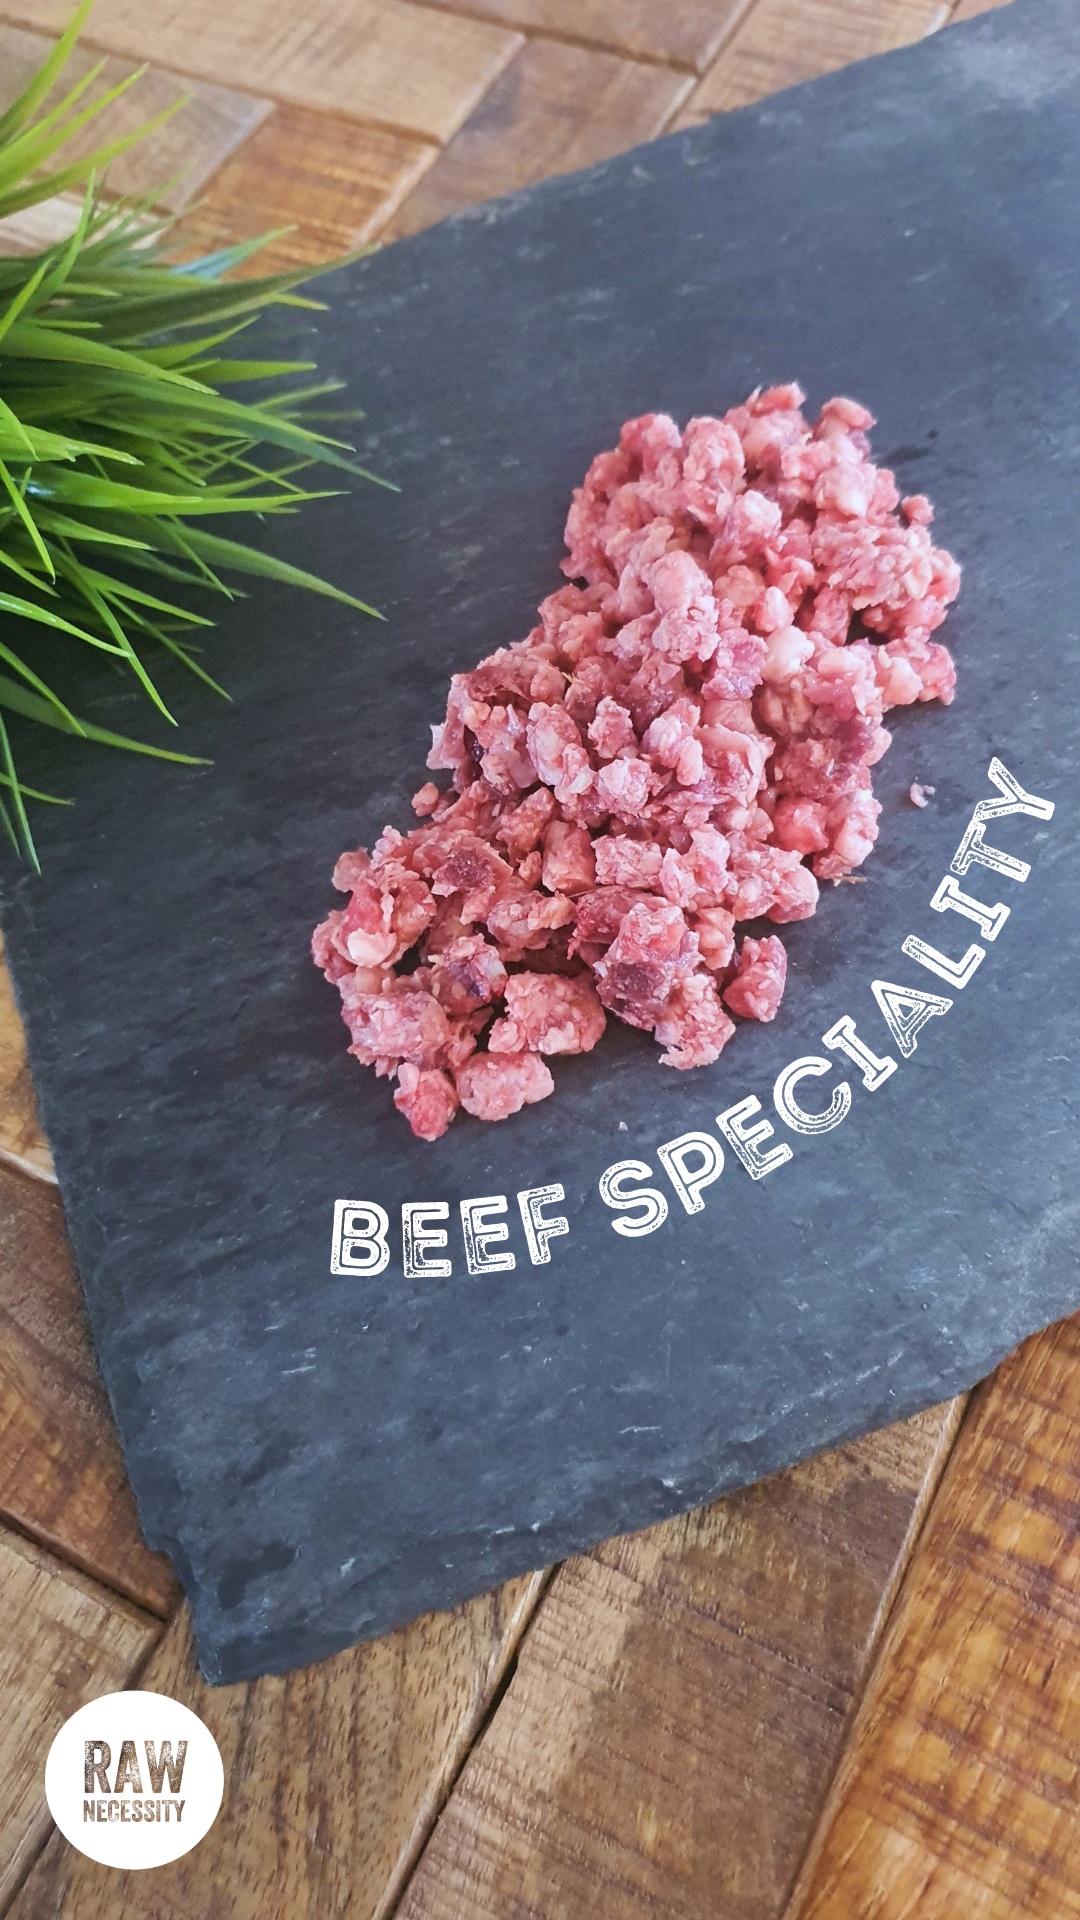 Raw Necessity Boneless Beef Speciality on a piece of slate.